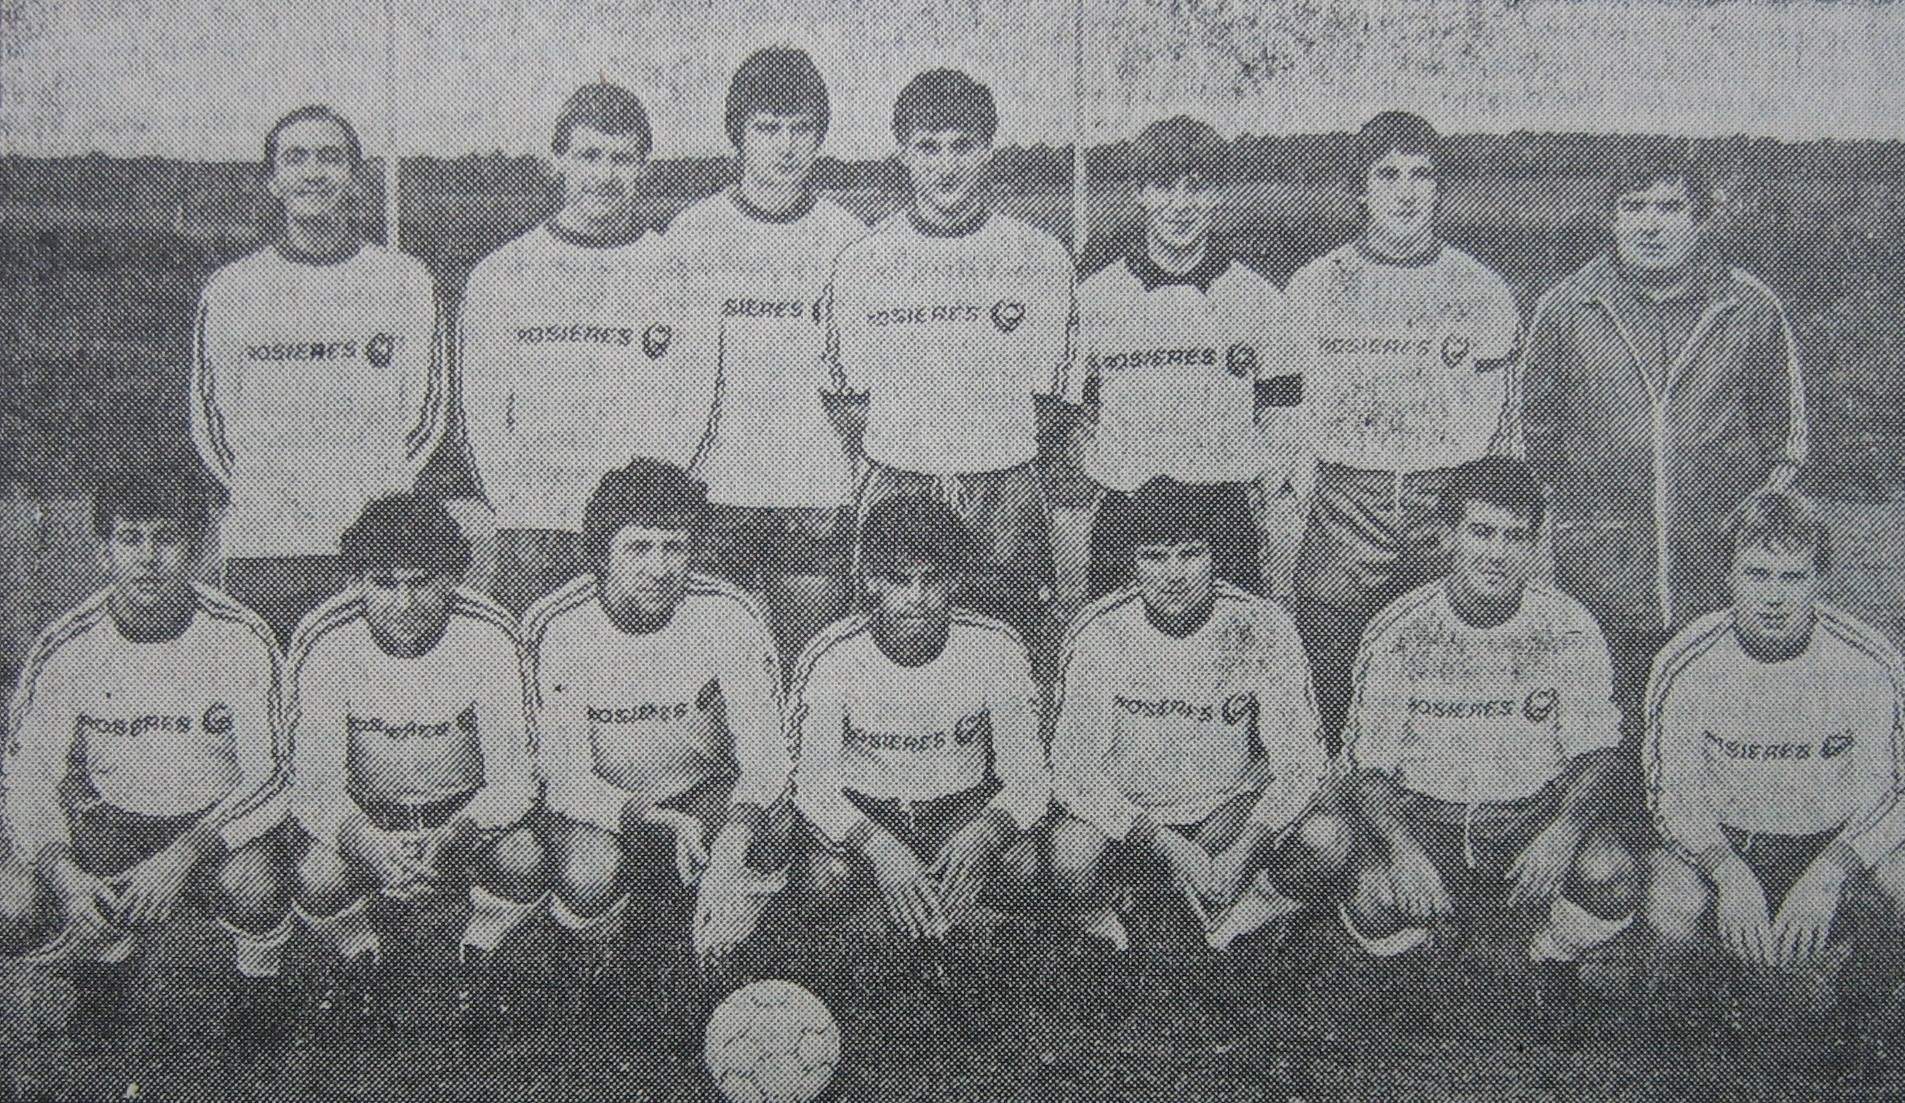 Séniors 1A 1984-85